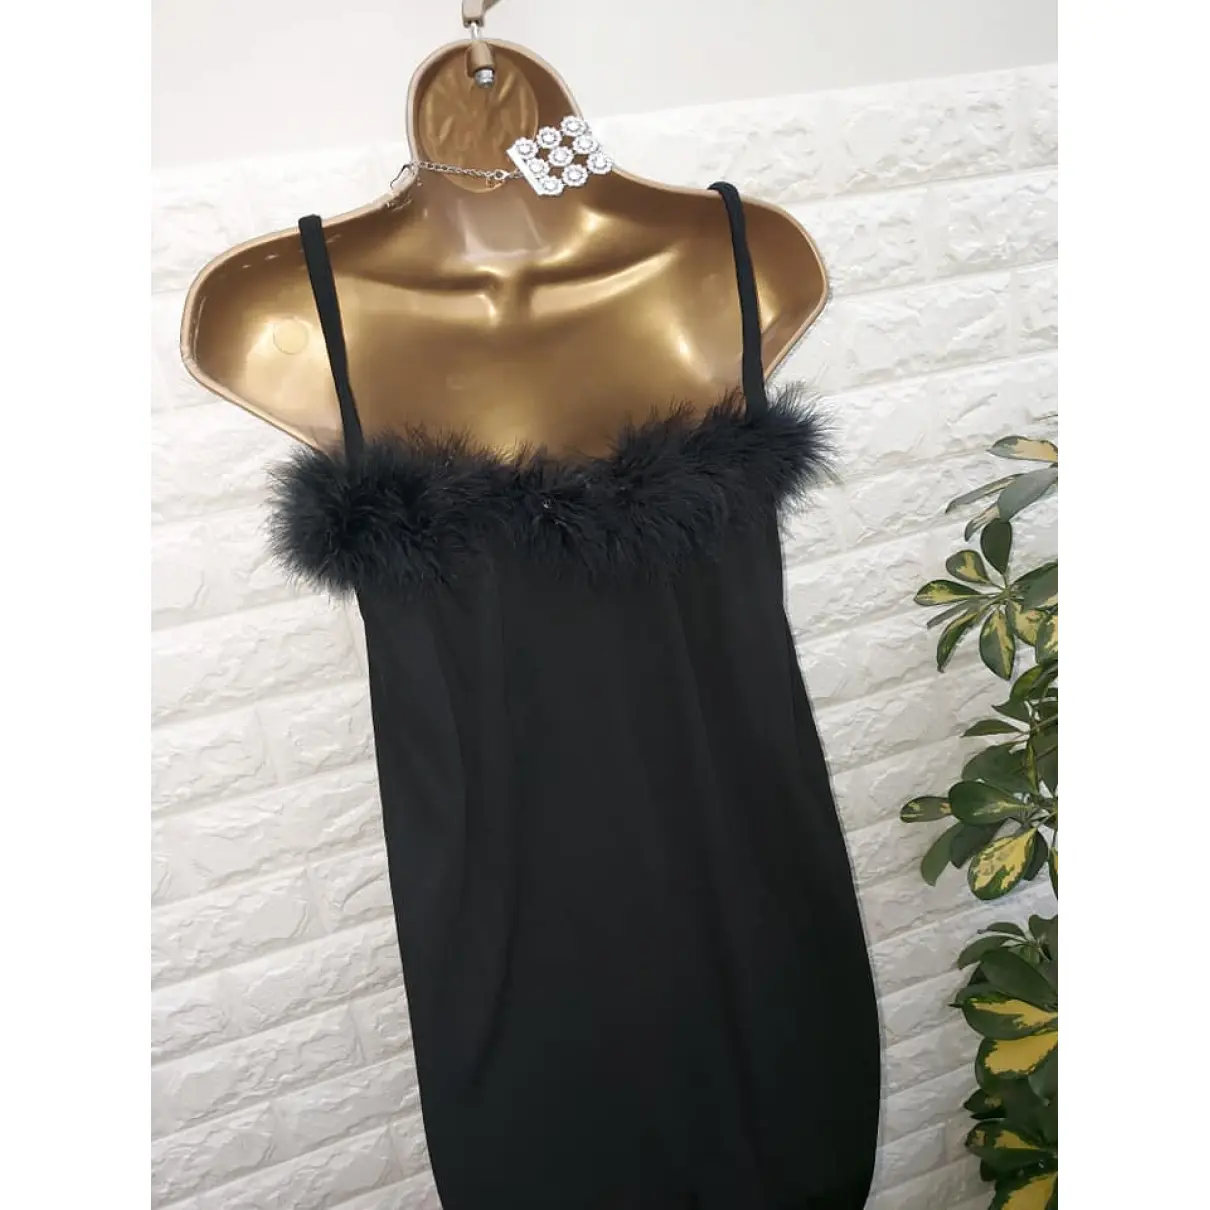 Buy Saint Laurent Mini dress online - Vintage